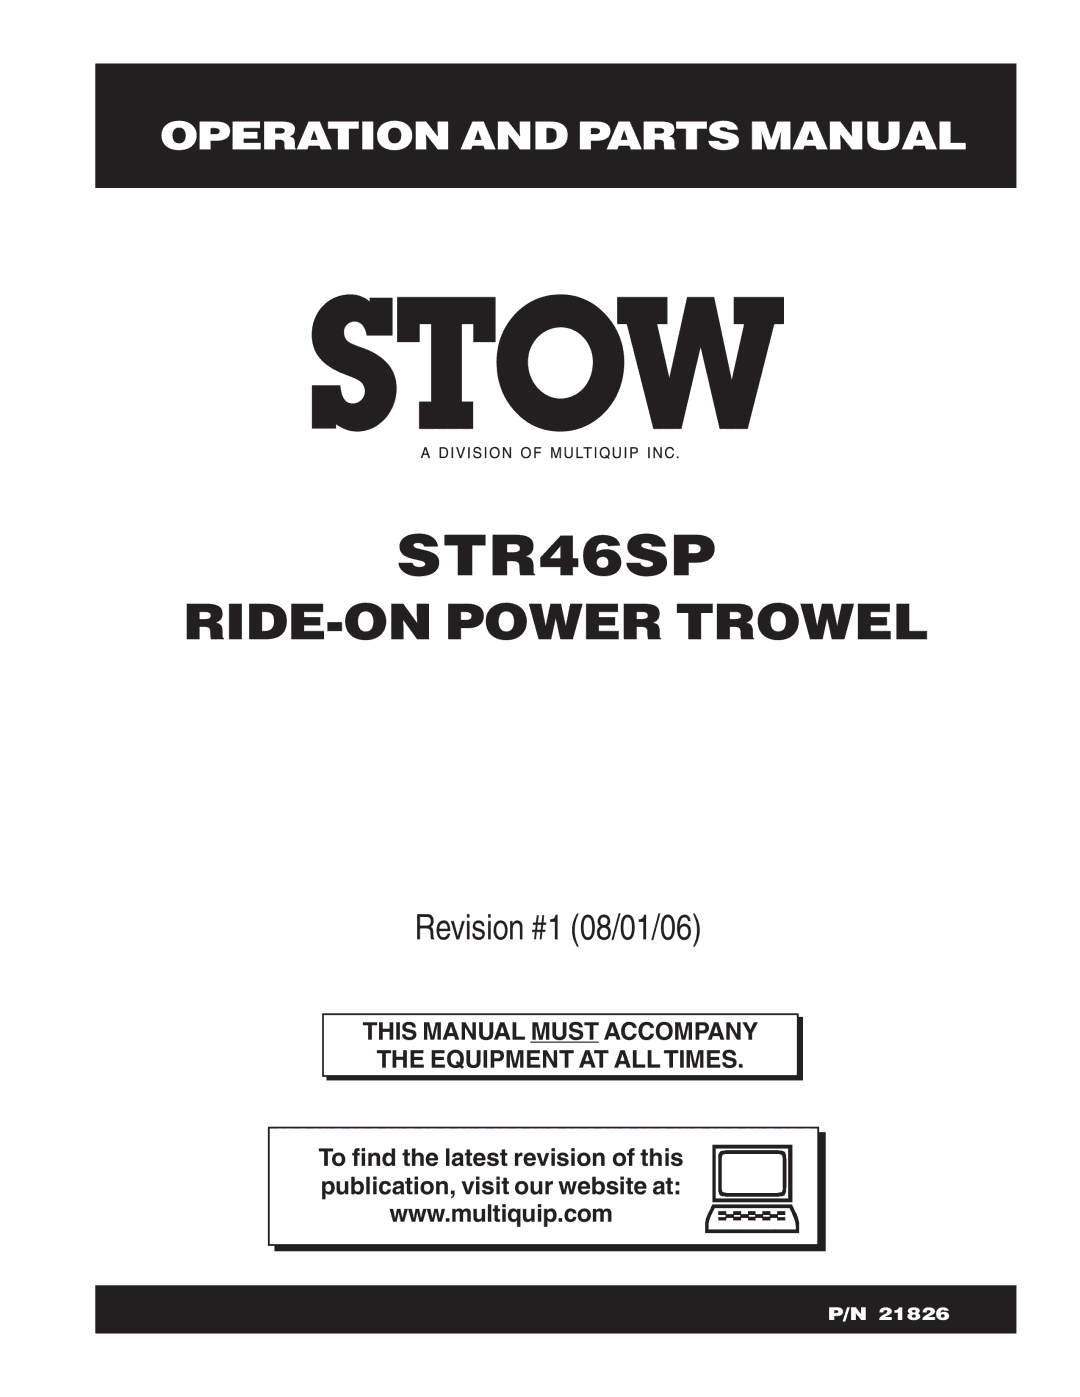 Stow STR46SP manual 